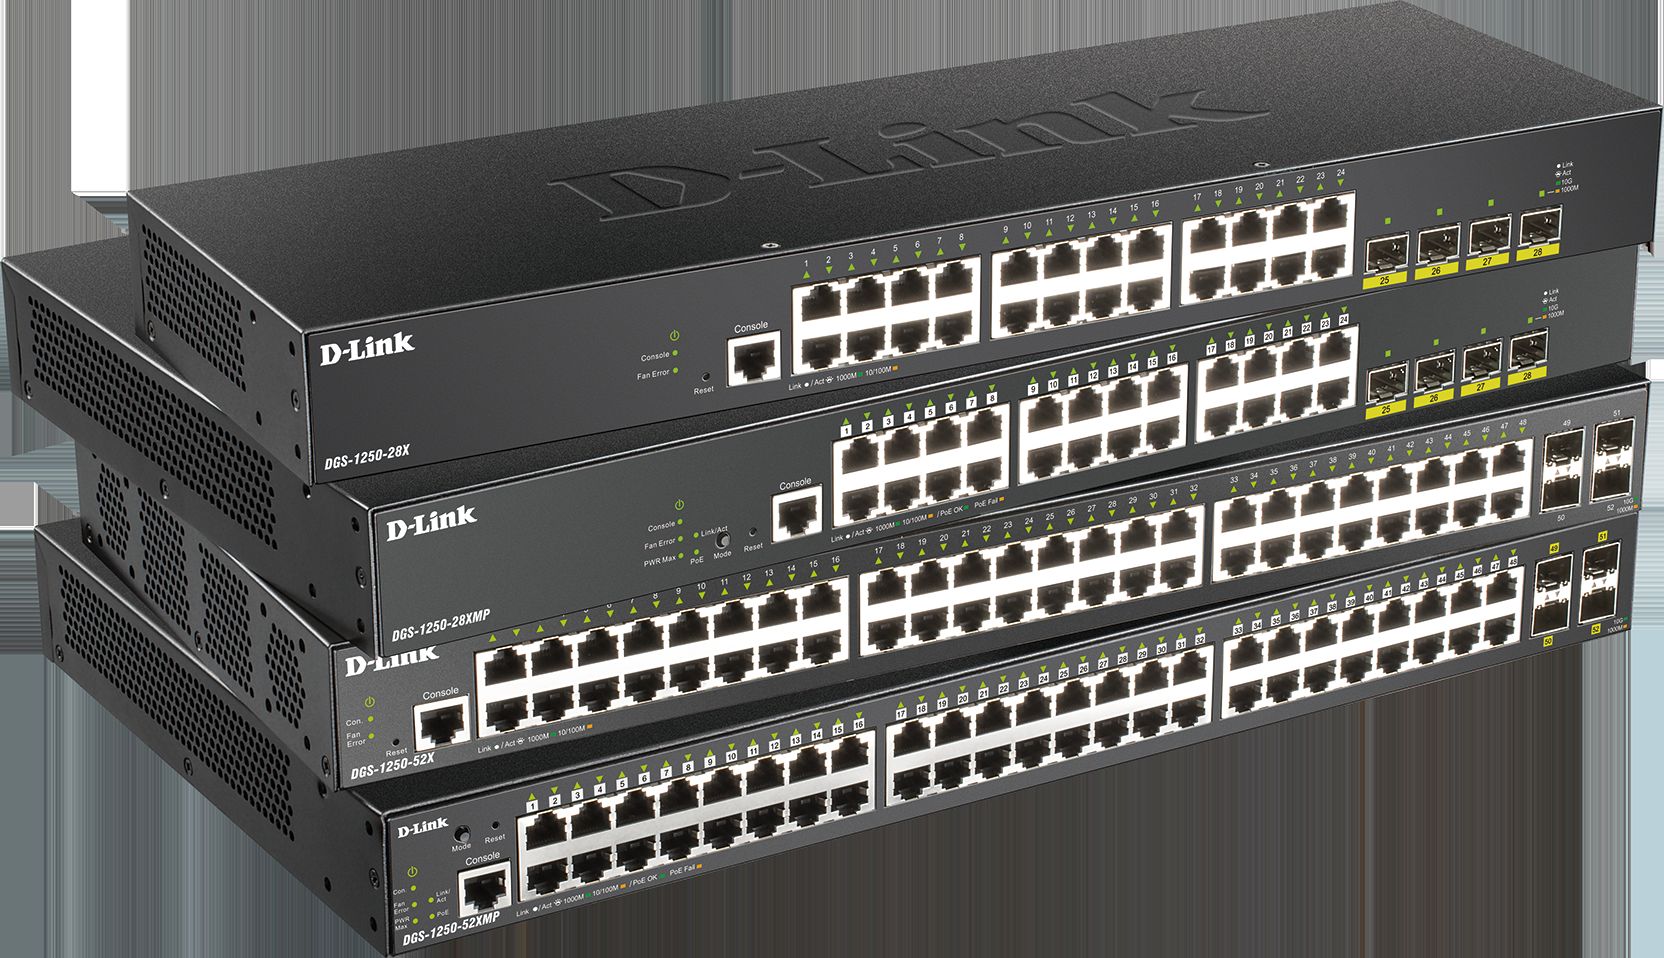 D-Link rozbudowuje portfolio gigabitowych zarządzalnych przełączników Smart o nową rodzinę DGS-1250